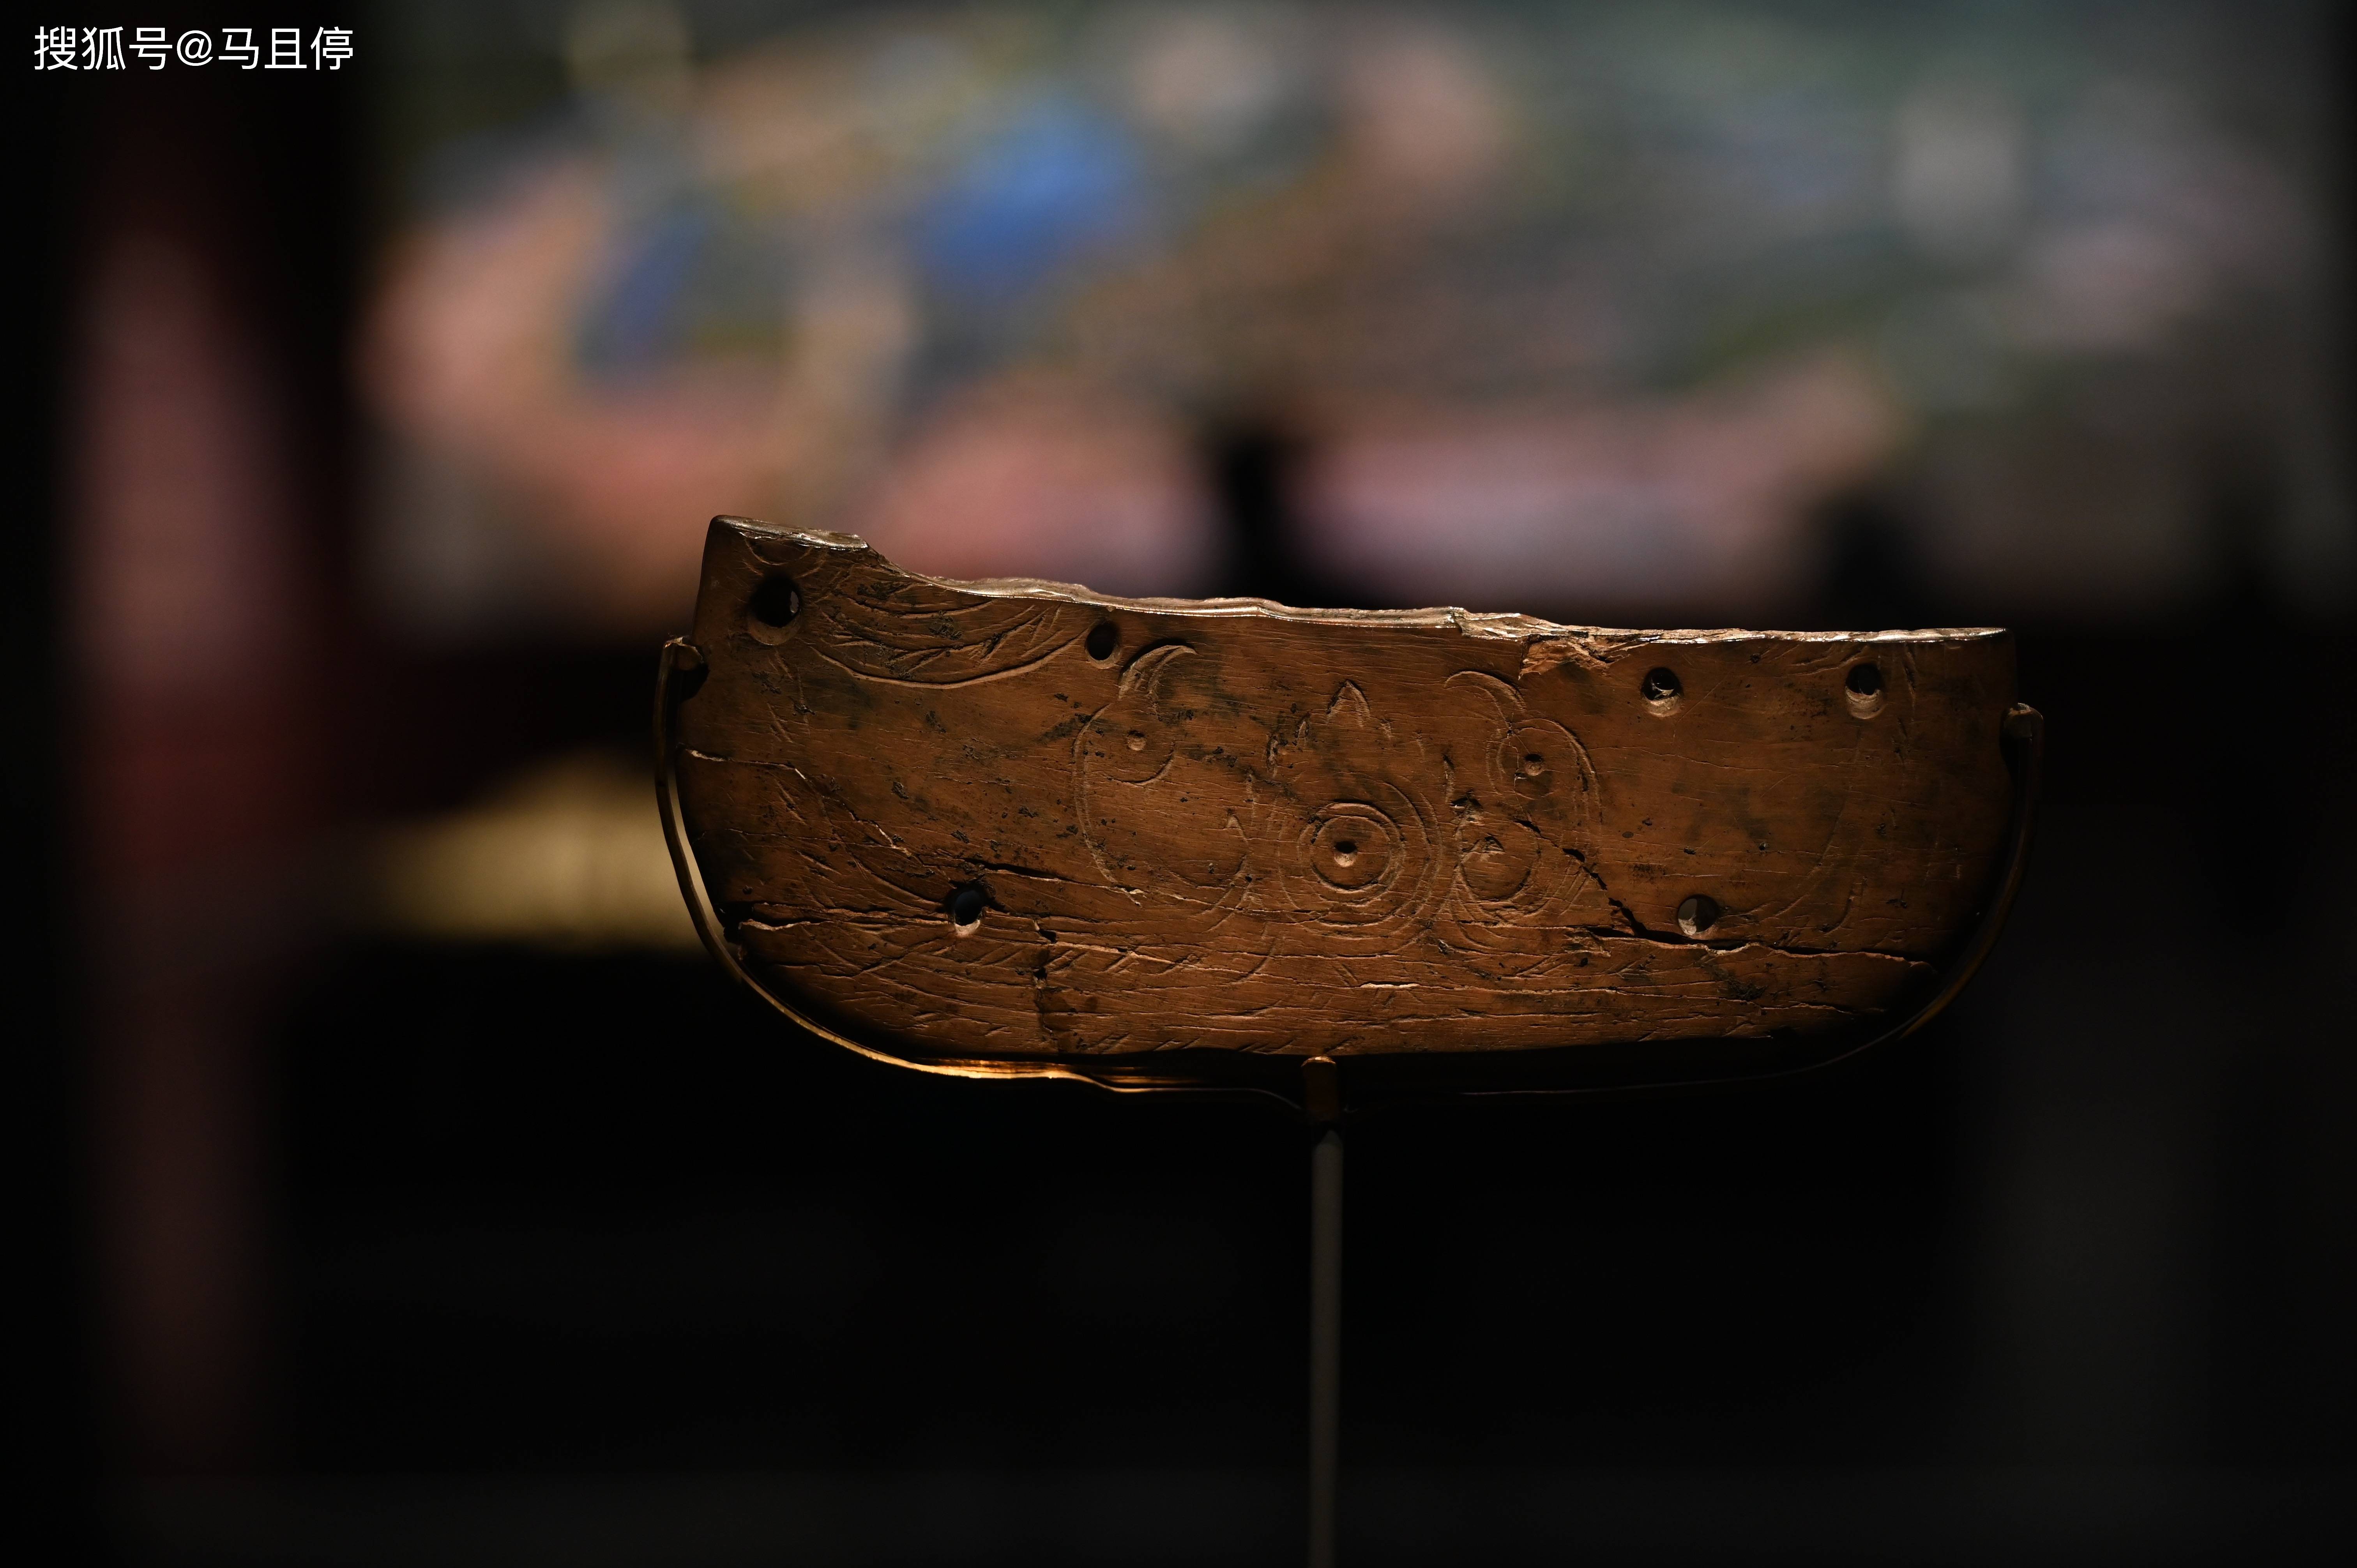 却有着近7000年的历史,出土于河姆渡遗址,是原始象牙雕刻的艺术珍品